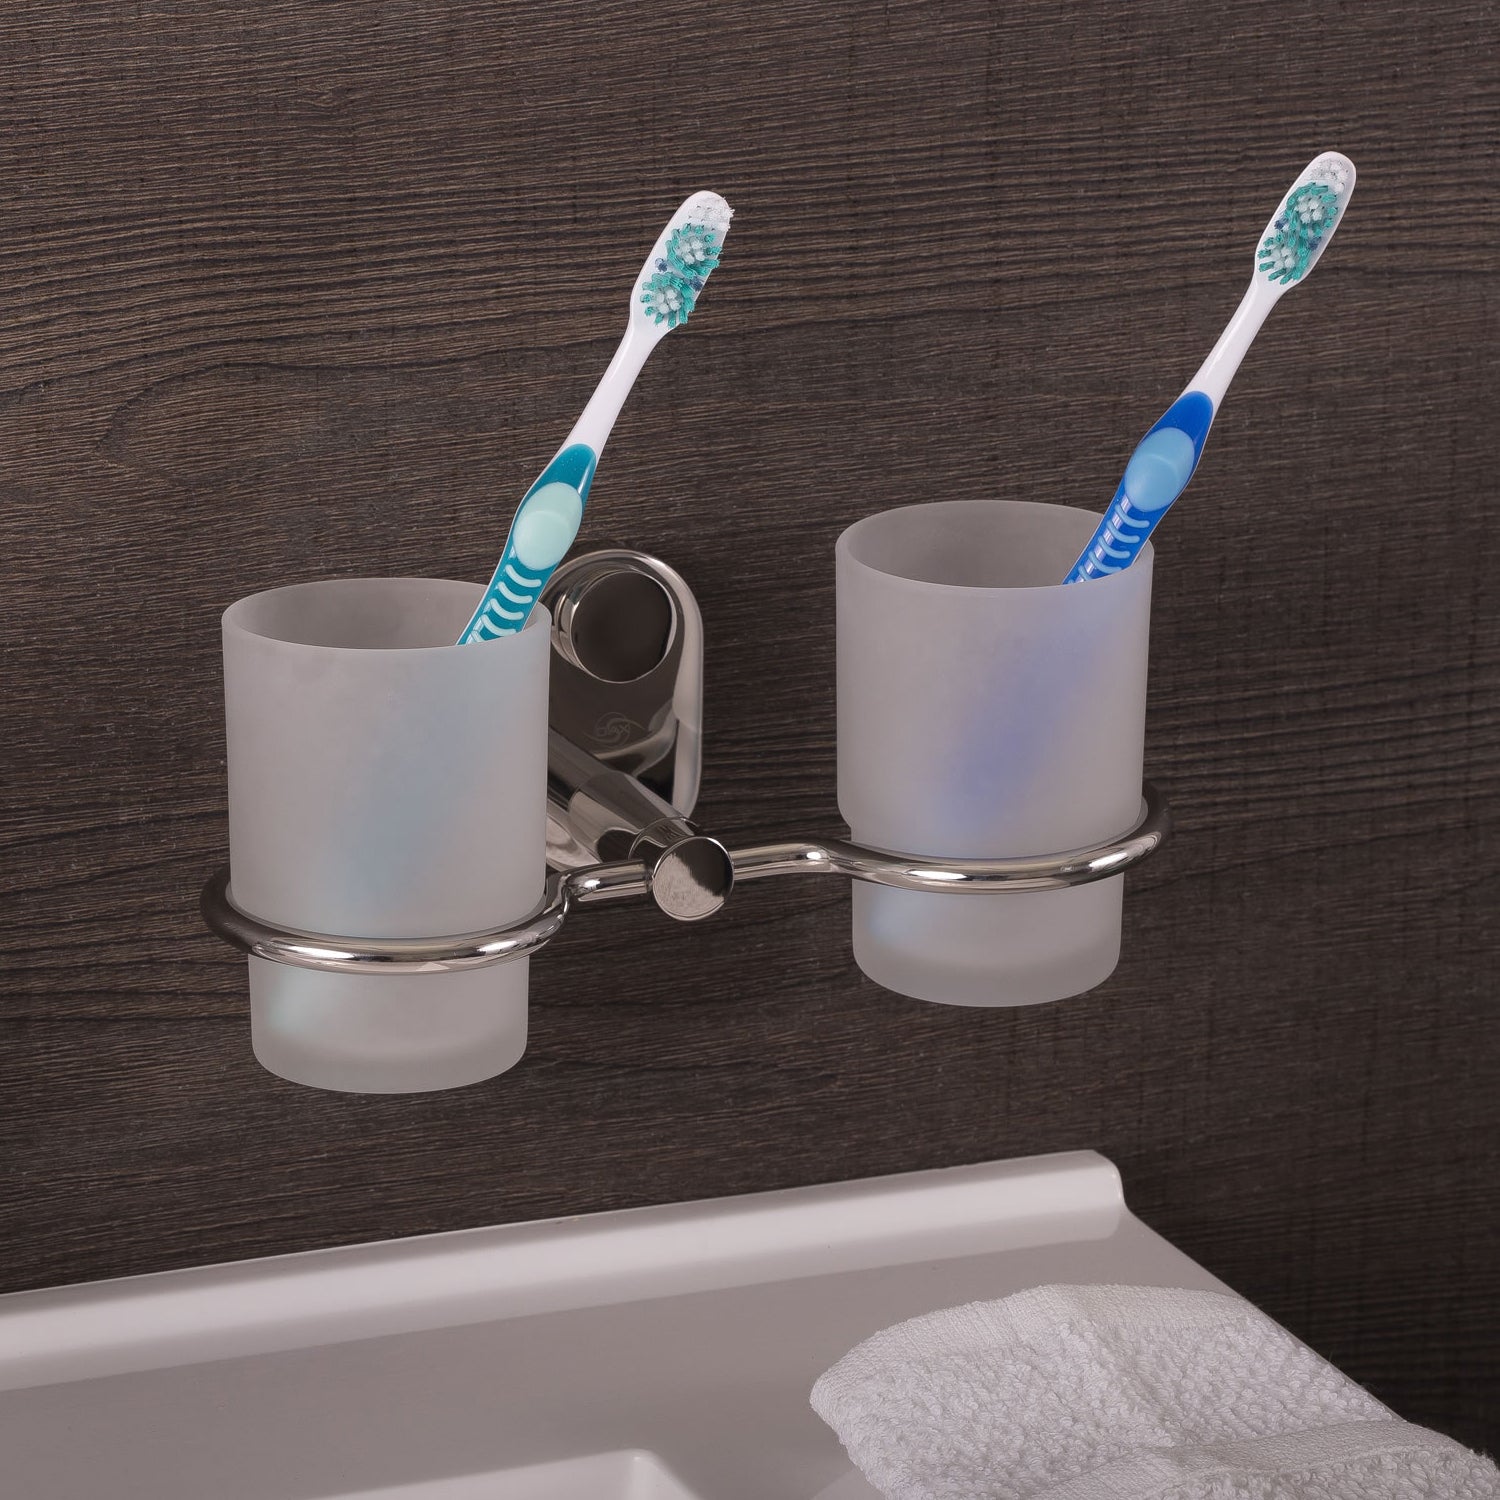 DAX - Soporte para cepillo de dientes de doble vaso para baño, acero inoxidable con vaso de vidrio, acabado pulido, 8-1/4 x 3-3/4 x 4-1/8 pulgadas (DAX-G0214-P) 